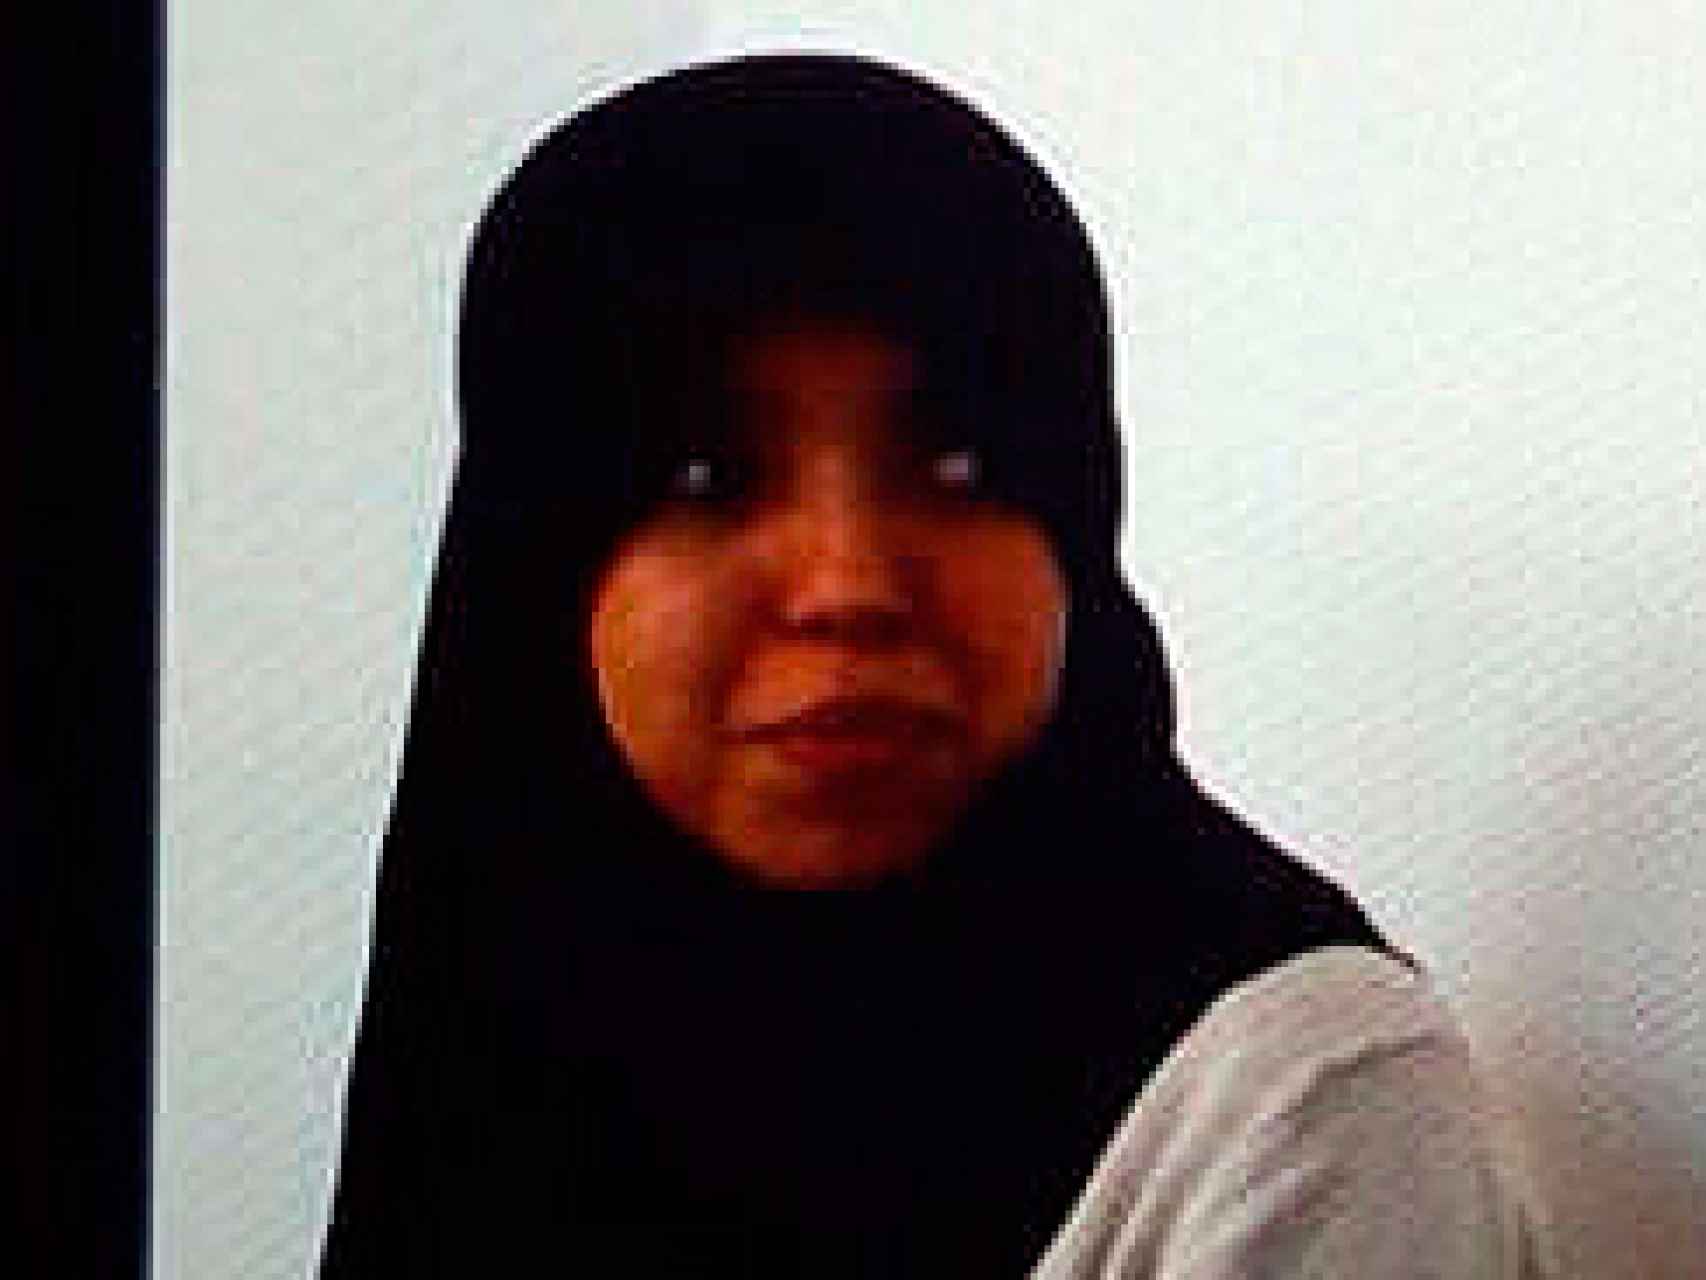 Soukaina, la joven canaria, podría ser condenada a tres años de prisión como miembro del Daesh en España.